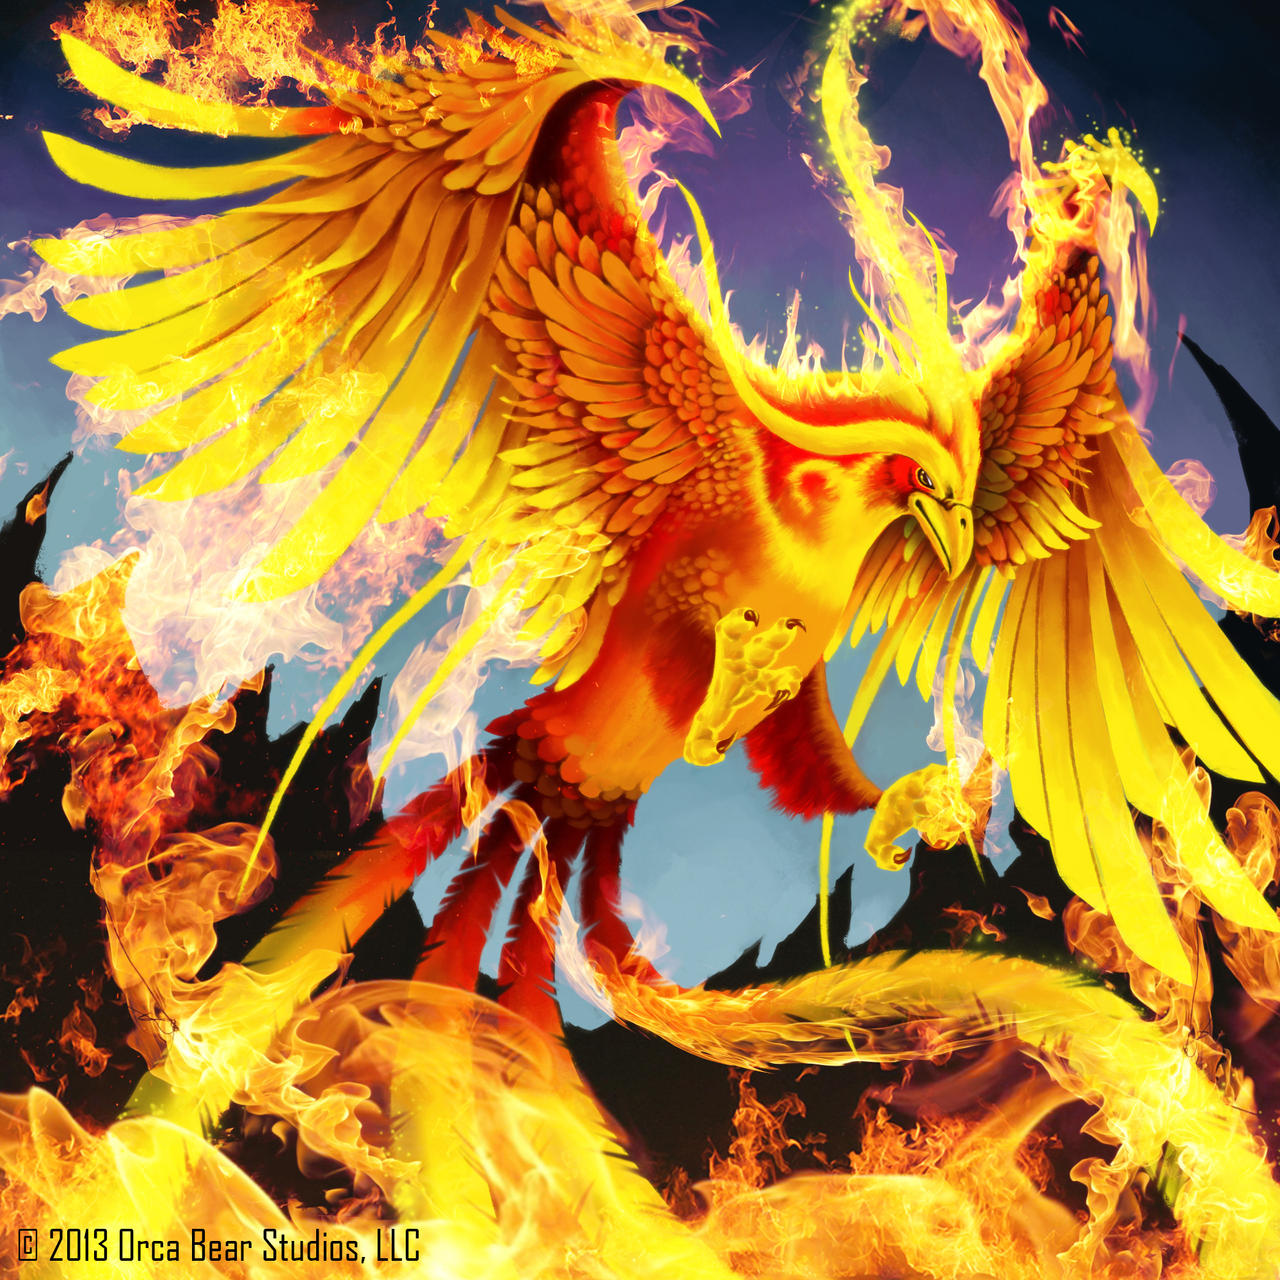 Fiery Phoenix - Keepers of Grimoire by SkavenZverov on DeviantArt